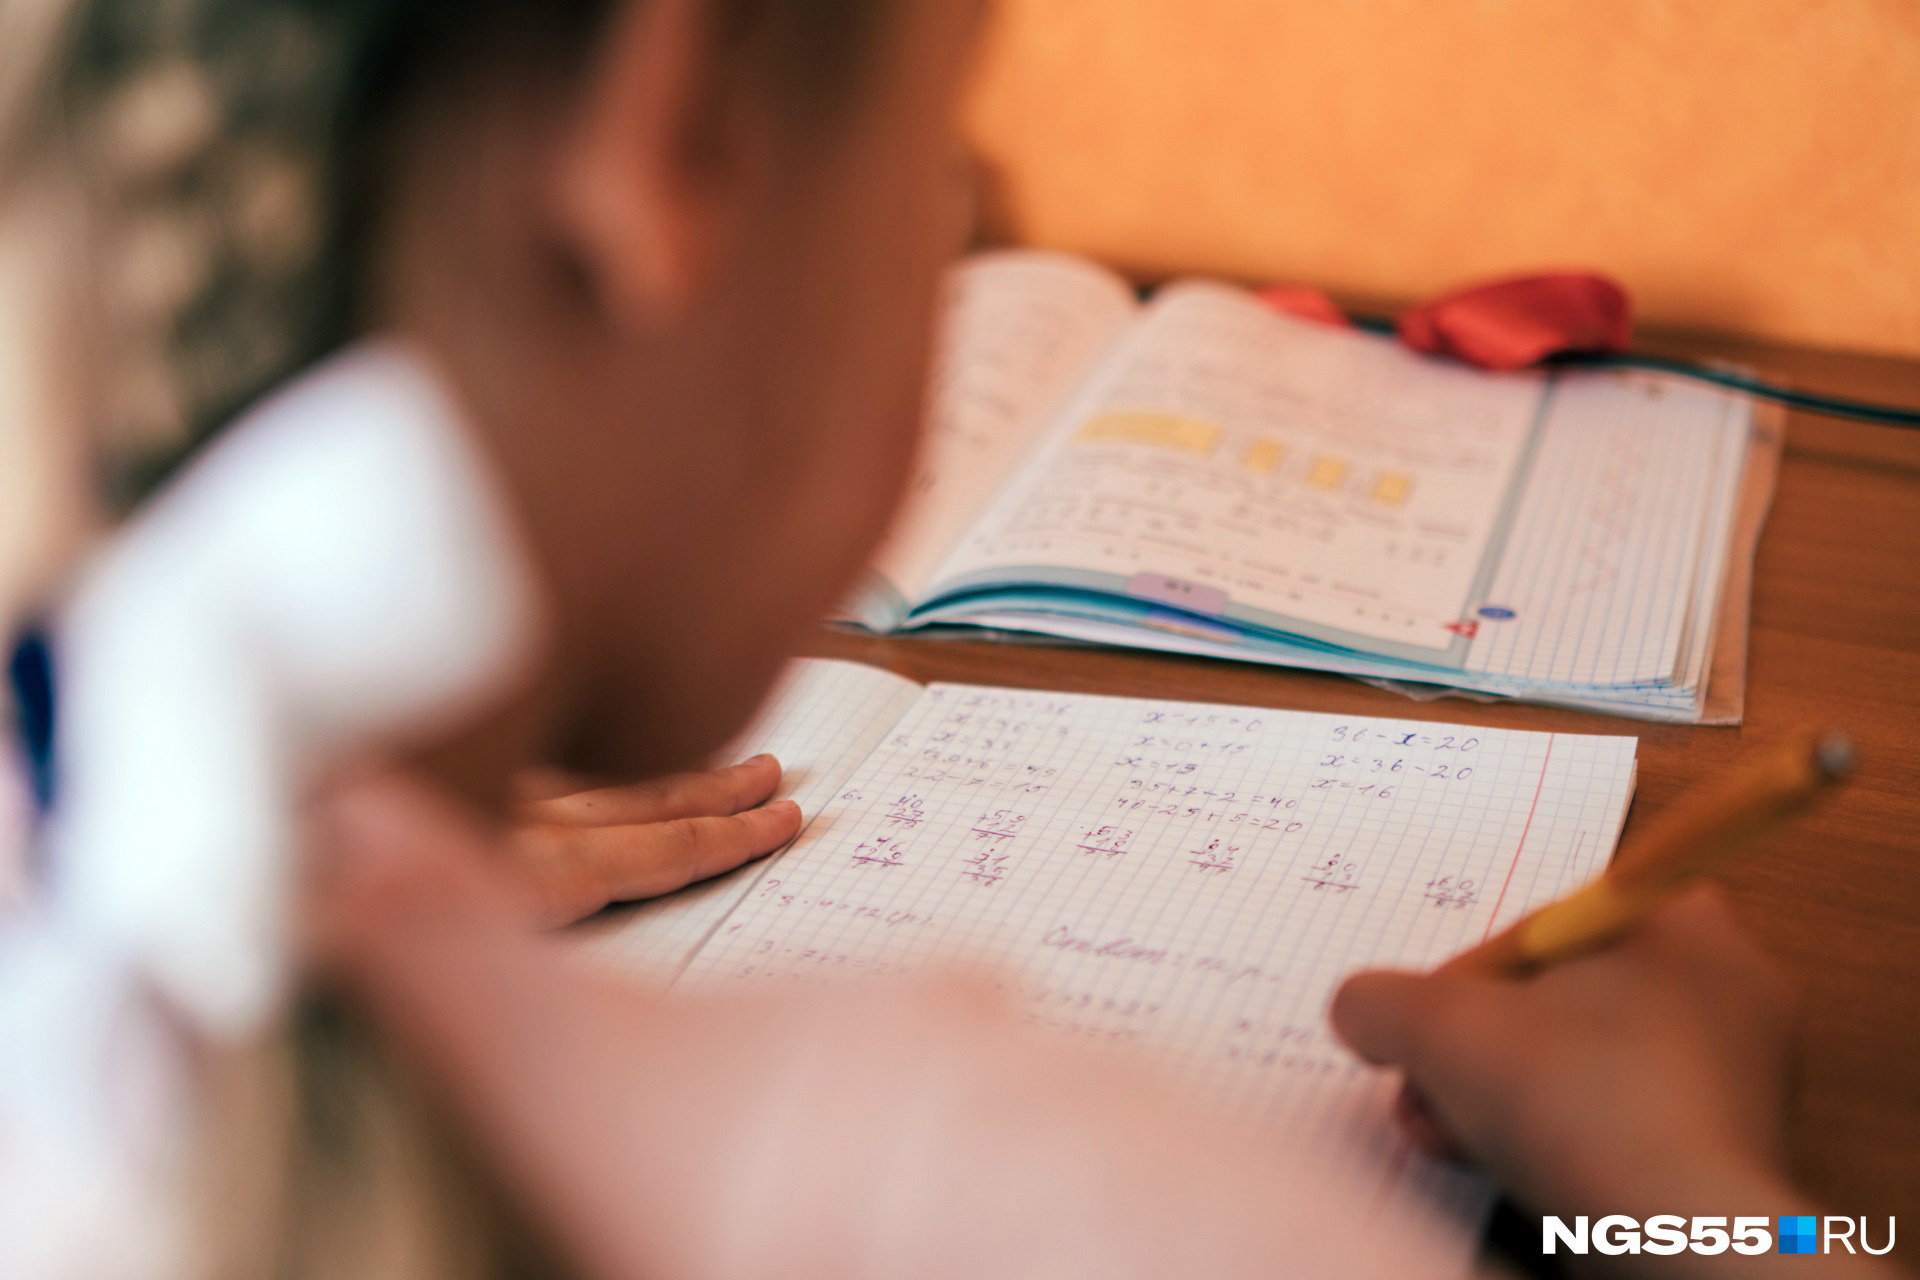 Родители признаются, что первый год домашнего обучения — самый сложный из-за перестройки всех временных и образовательных процессов